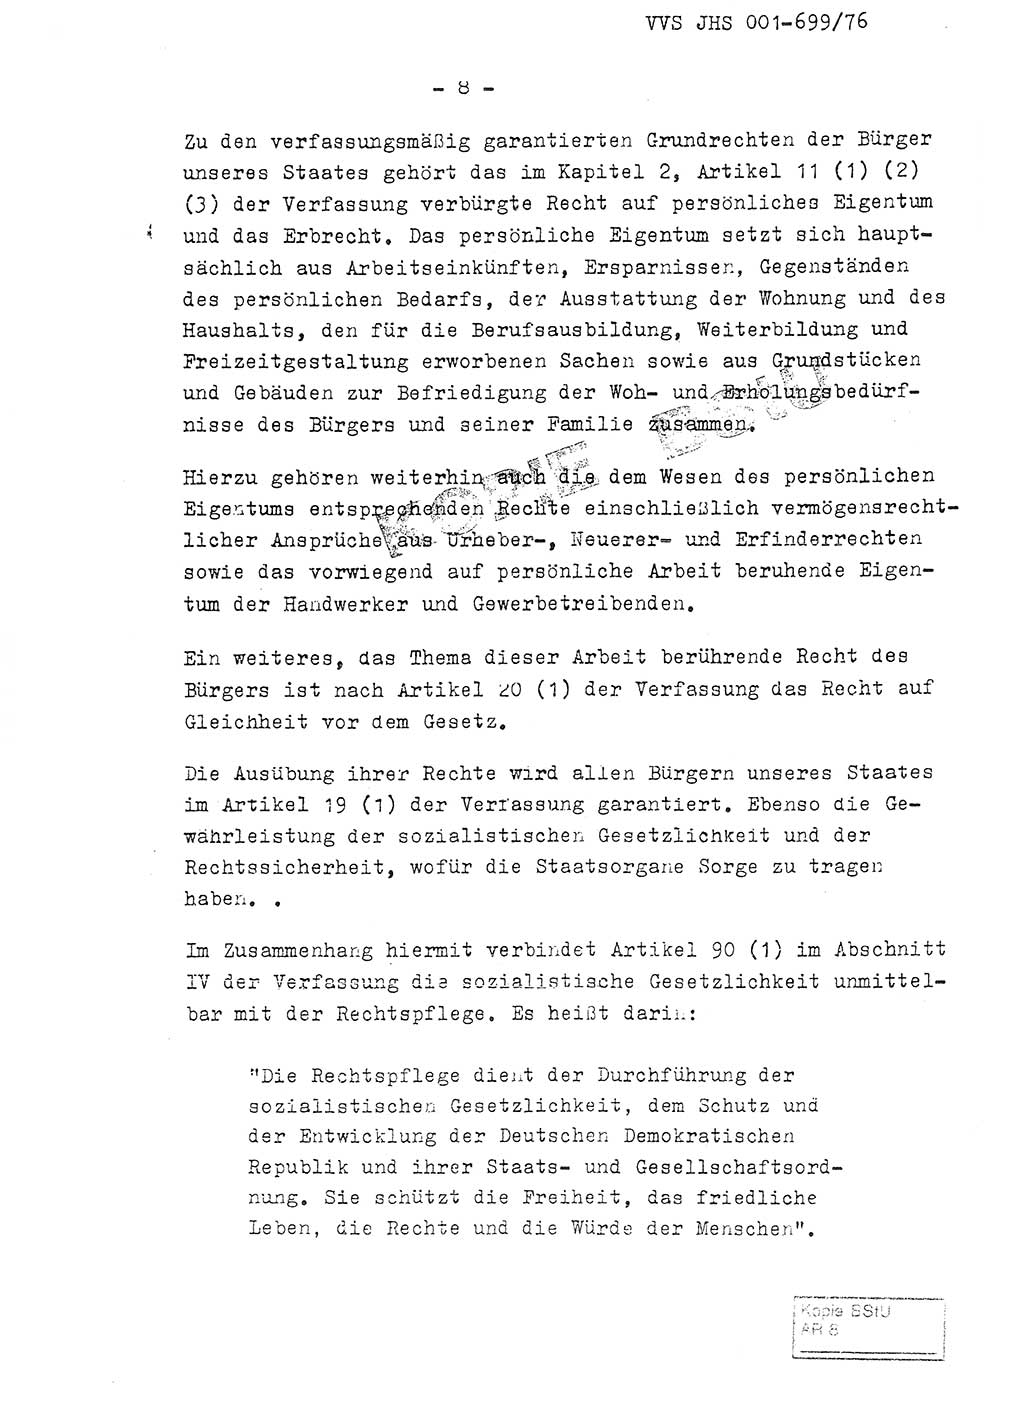 Fachschulabschlußarbeit Leutnant Volkmar Taubert (HA Ⅸ/9), Leutnant Axel Naumann (HA Ⅸ/9), Unterleutnat Detlef Debski (HA Ⅸ/9), Ministerium für Staatssicherheit (MfS) [Deutsche Demokratische Republik (DDR)], Juristische Hochschule (JHS), Vertrauliche Verschlußsache (VVS) 001-699/76, Potsdam 1976, Seite 8 (FS-Abschl.-Arb. MfS DDR JHS VVS 001-699/76 1976, S. 8)